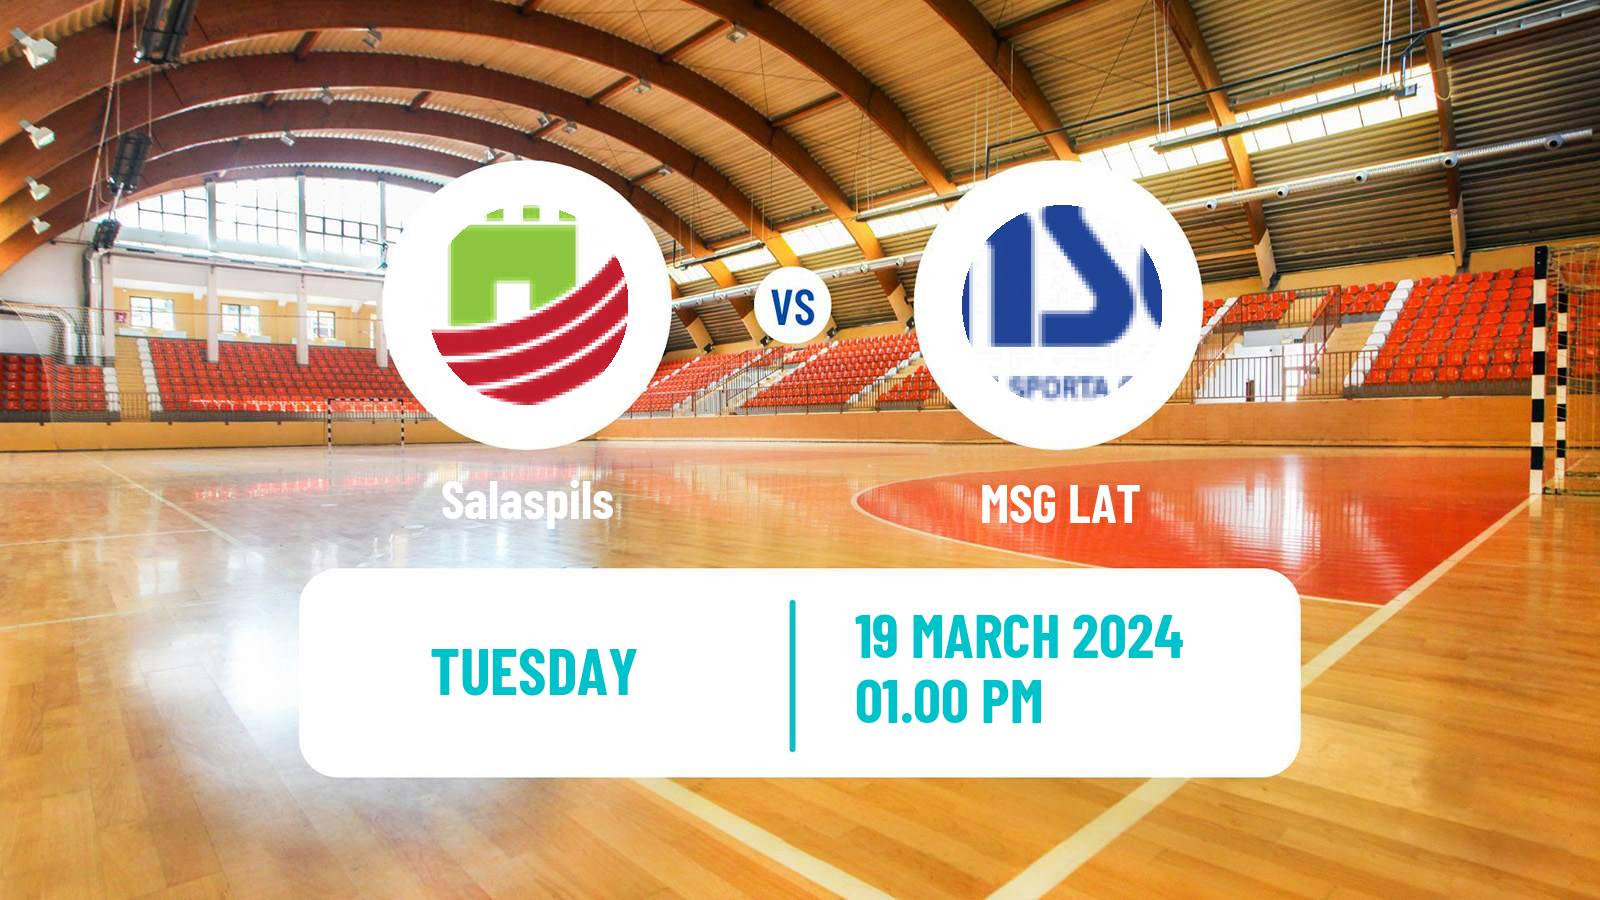 Handball Latvian Virsliga Handball Salaspils - MSG LAT